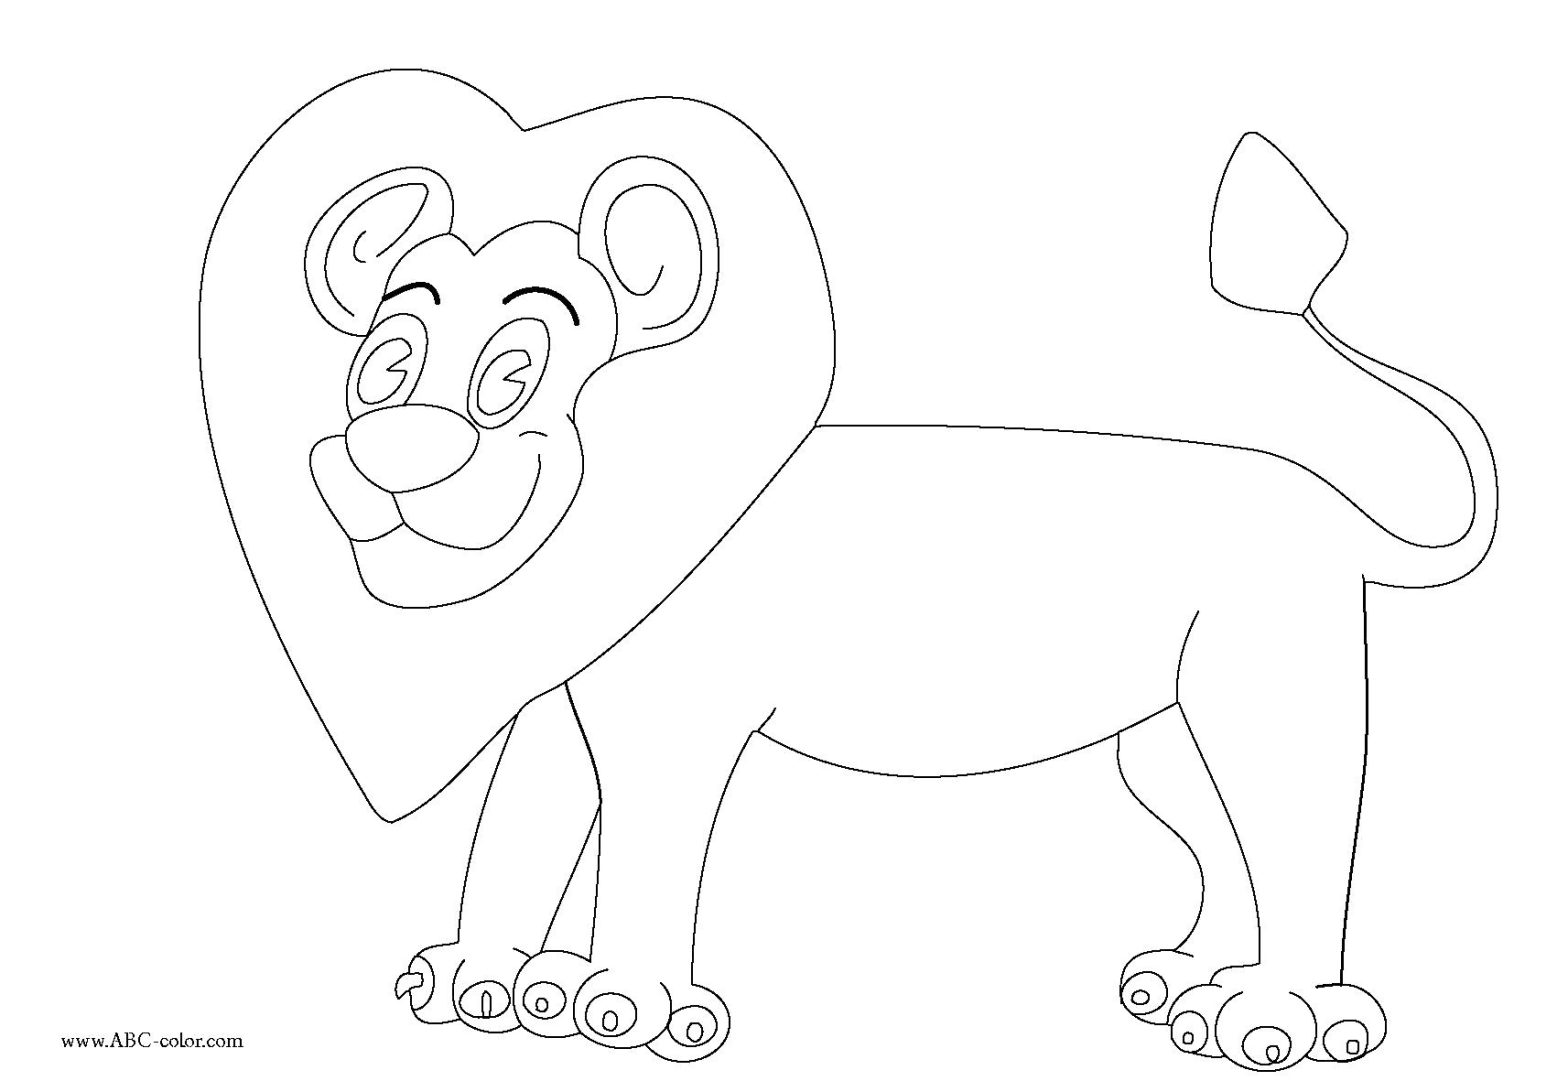 Раскраска льва - бесплатное развлечение для детей (Львы)